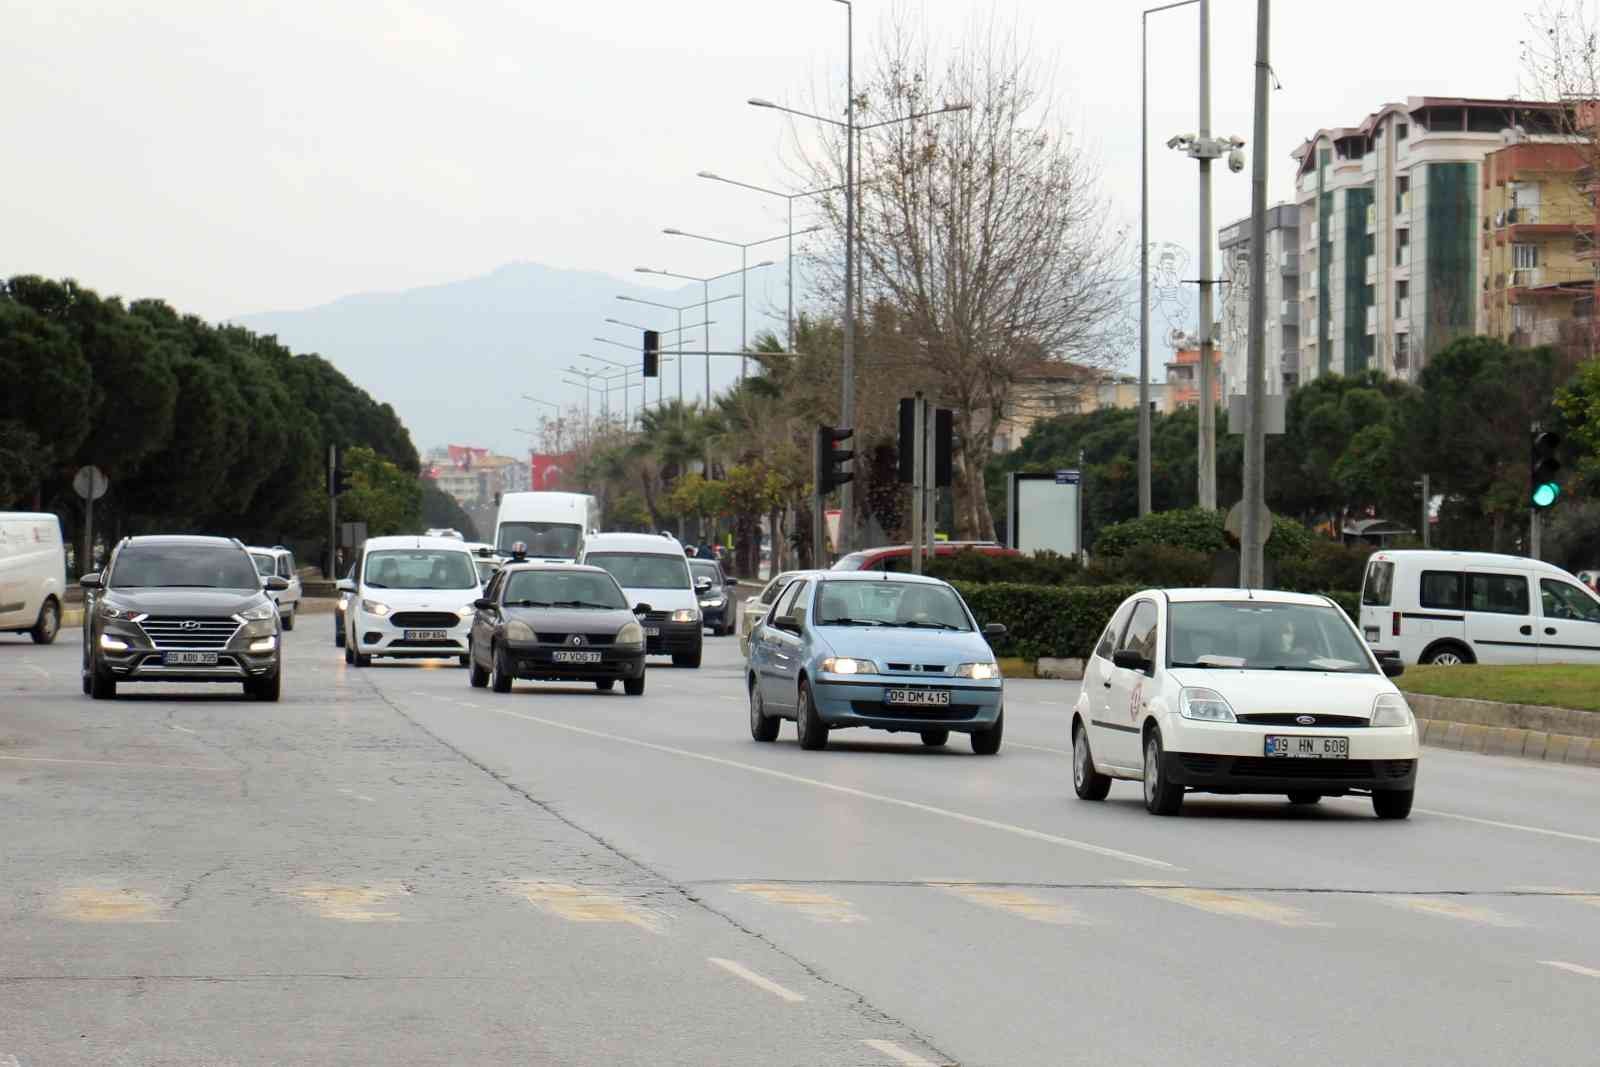 Aydın’da bin 447 yeni araç trafiğe çıktı #aydin